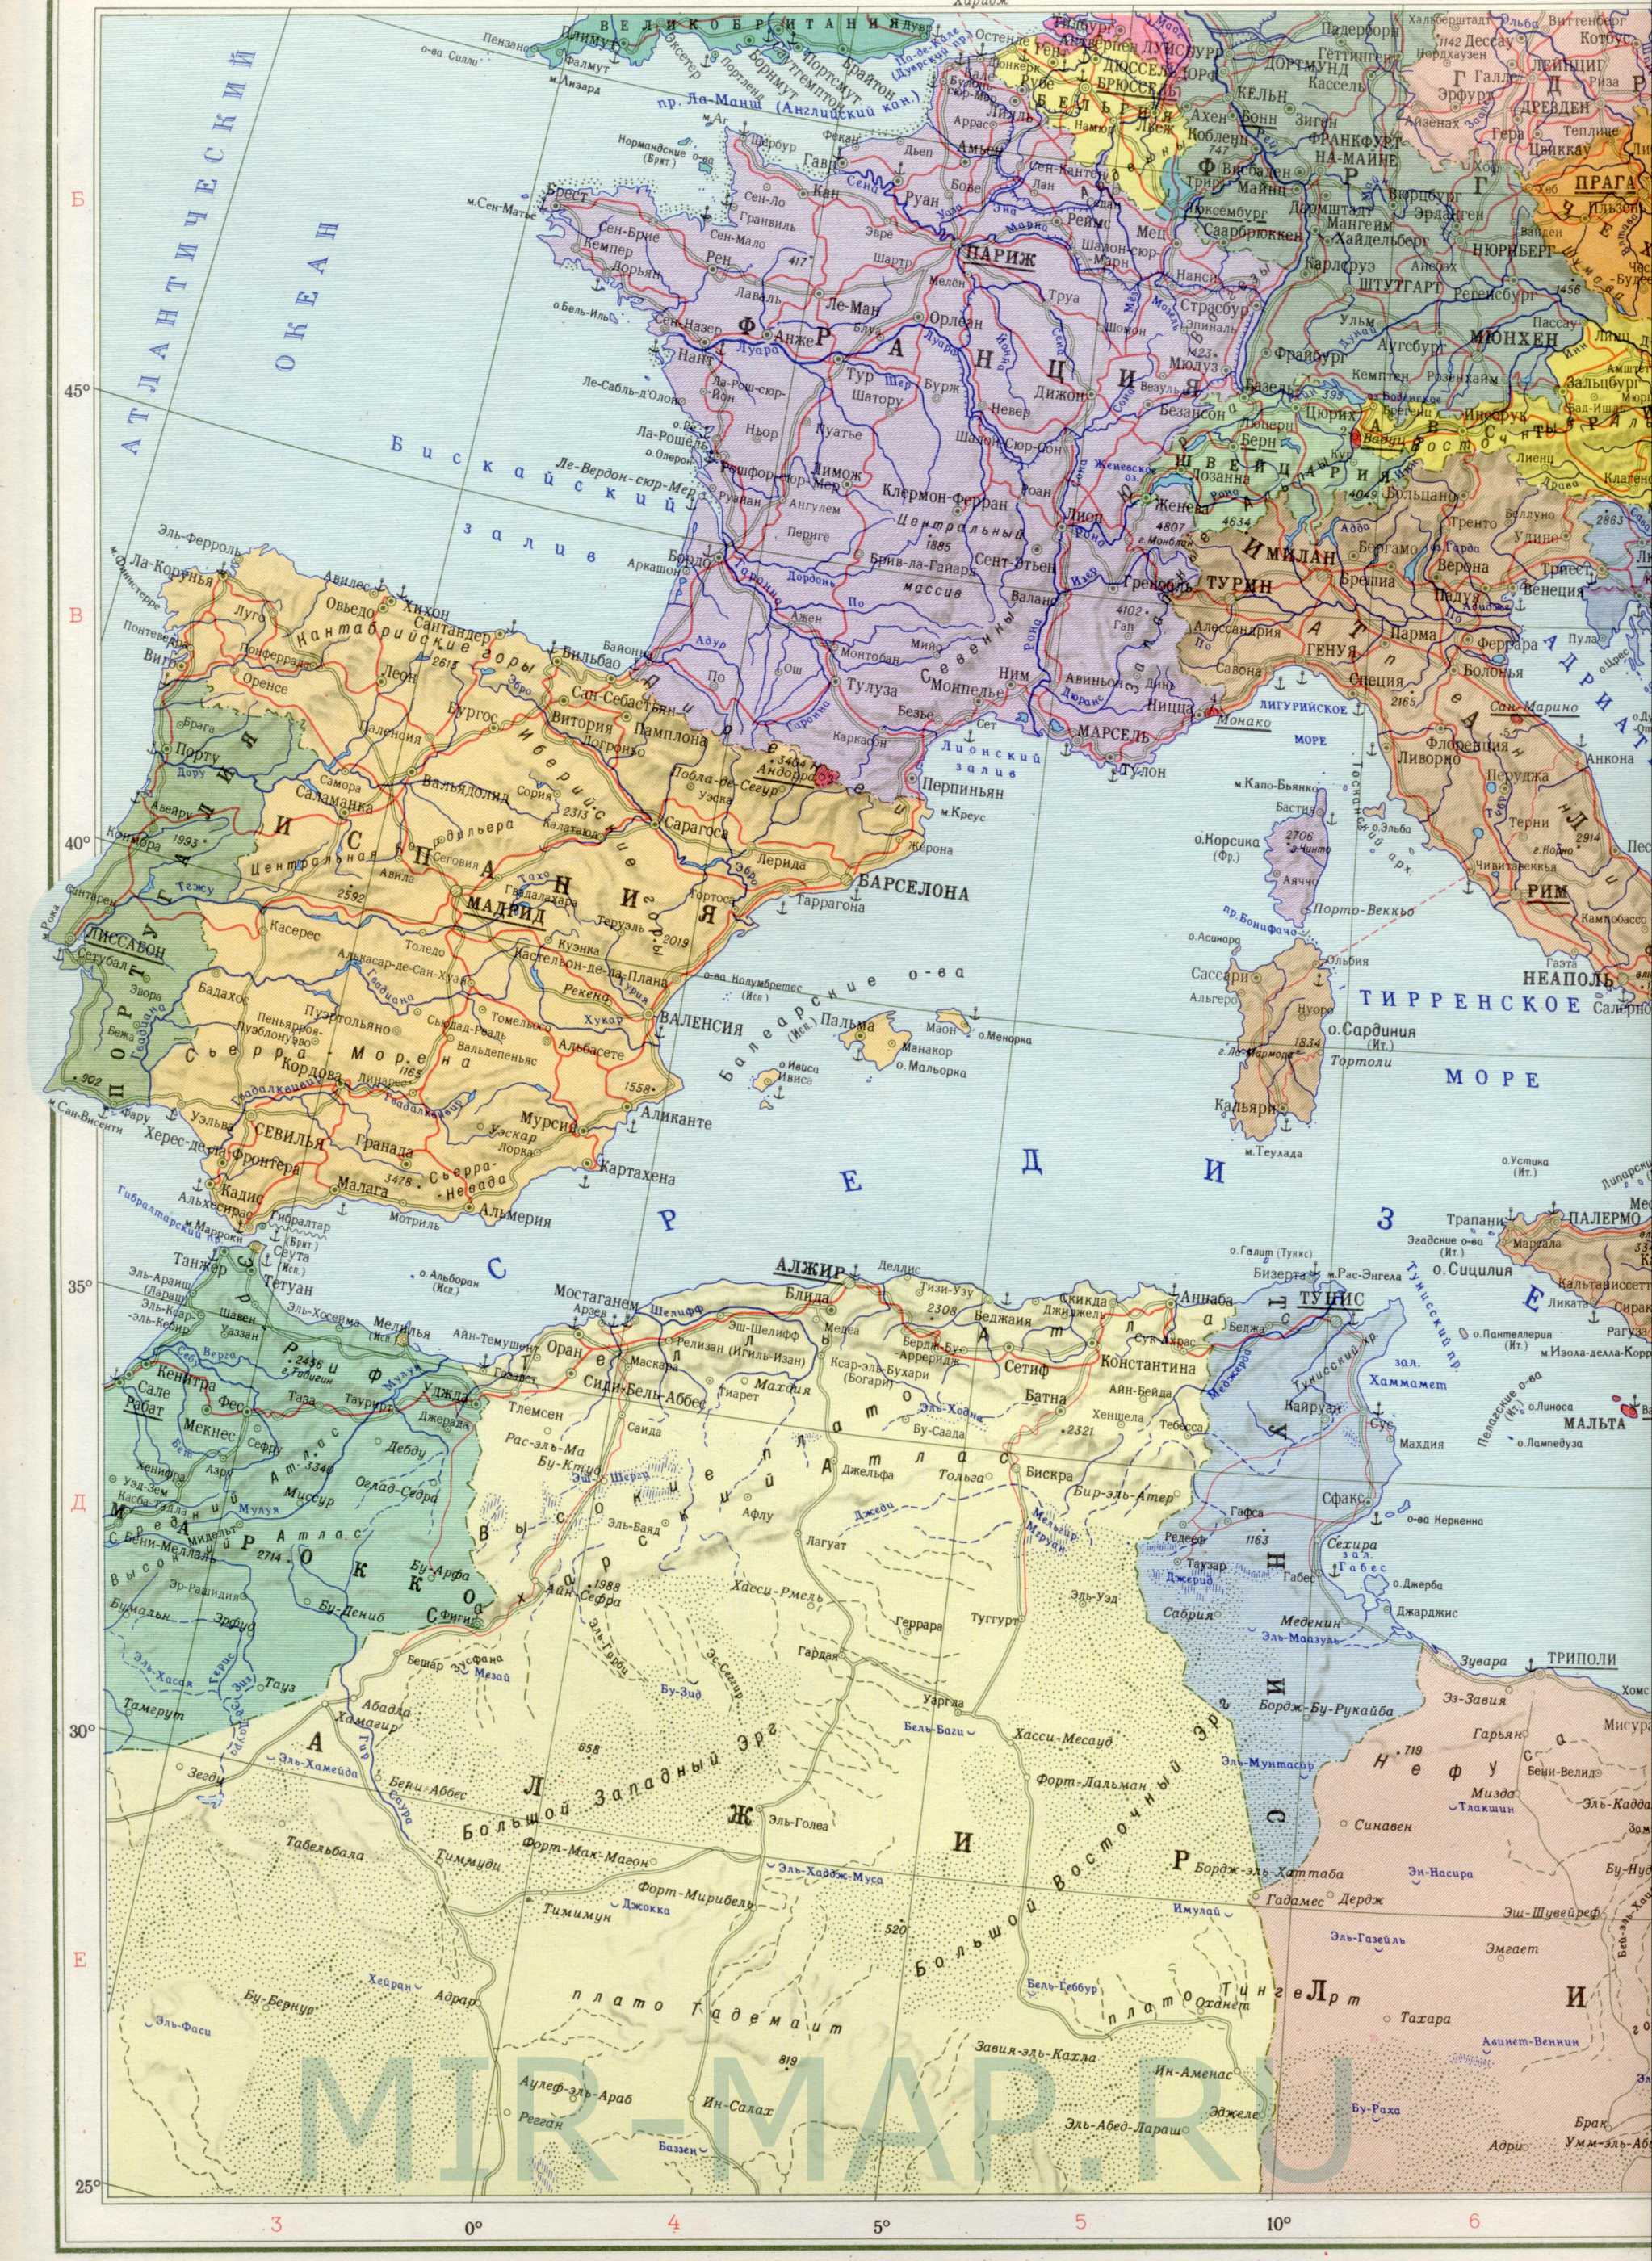 Политическая карта Европы - страны Средиземного моря. Политическая картаЕвропы на русском языке